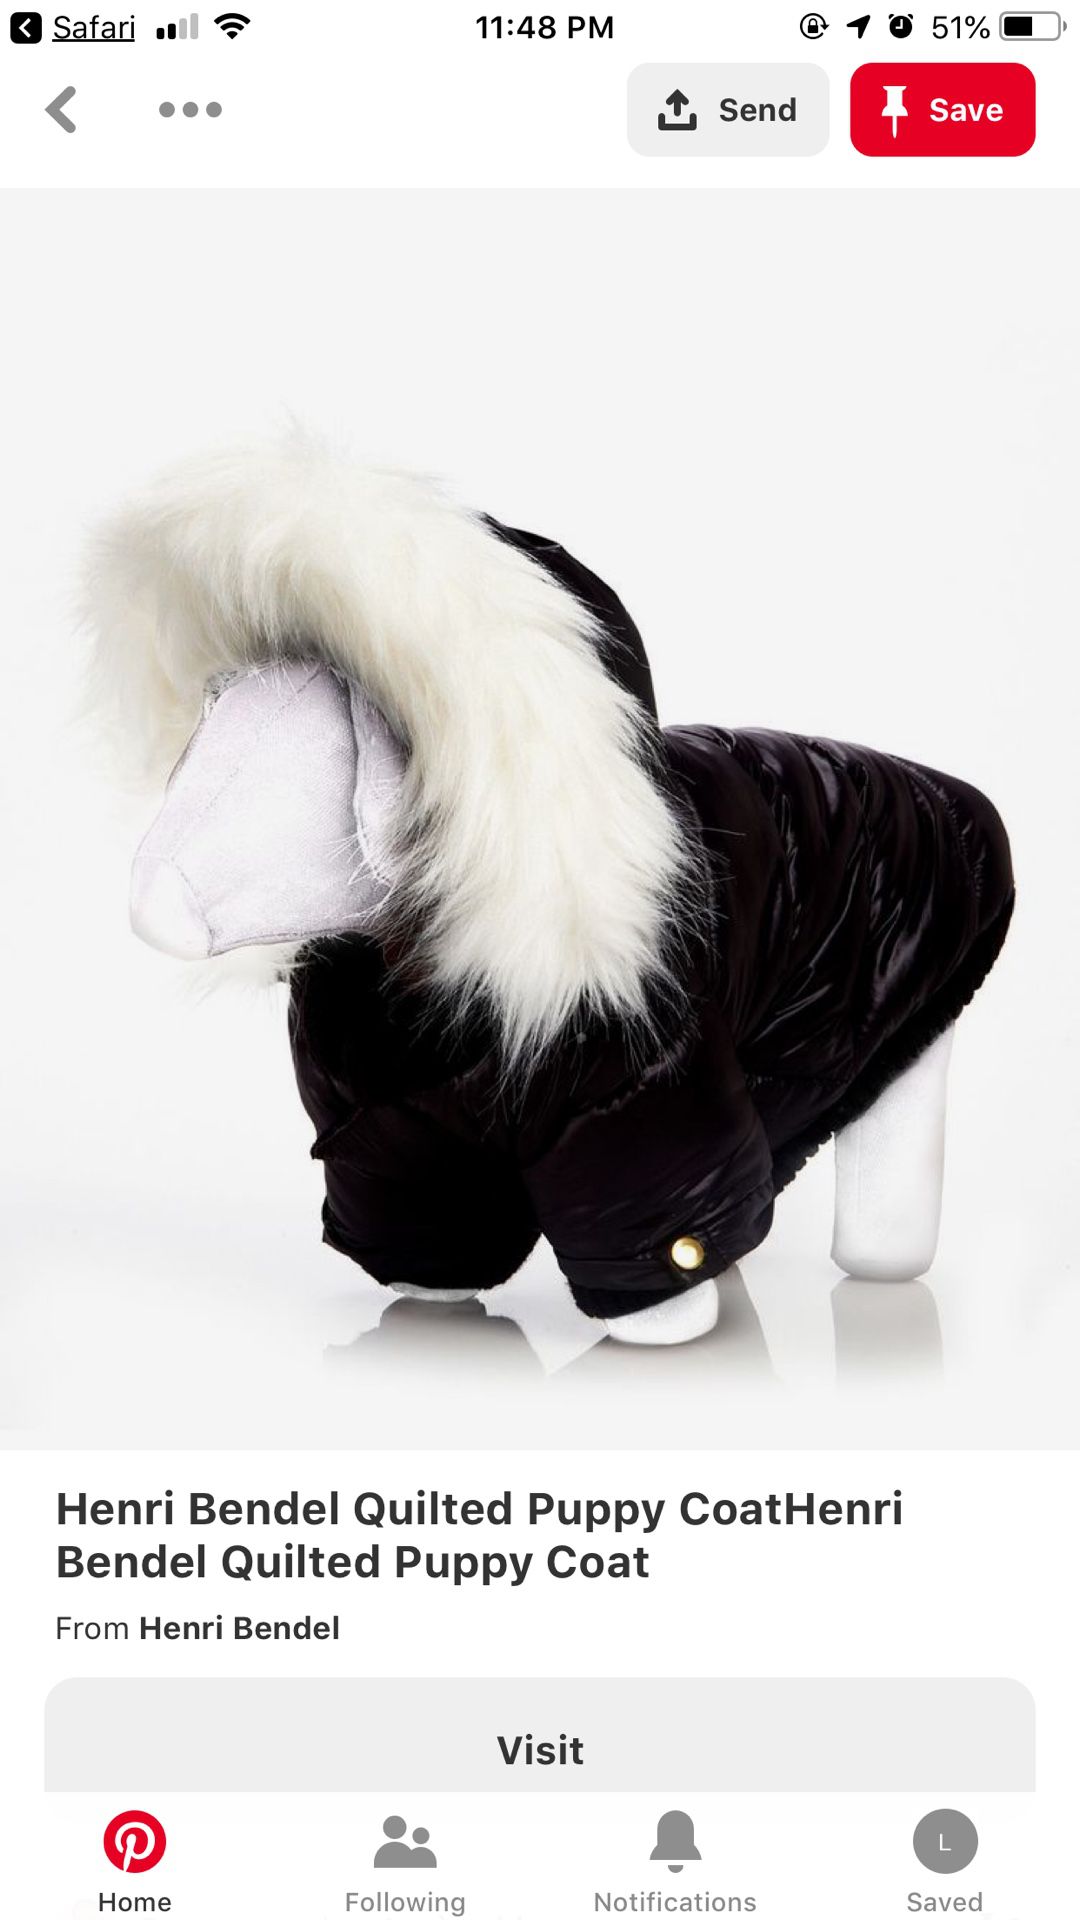 Henri Bendel dog coat with detachable hat